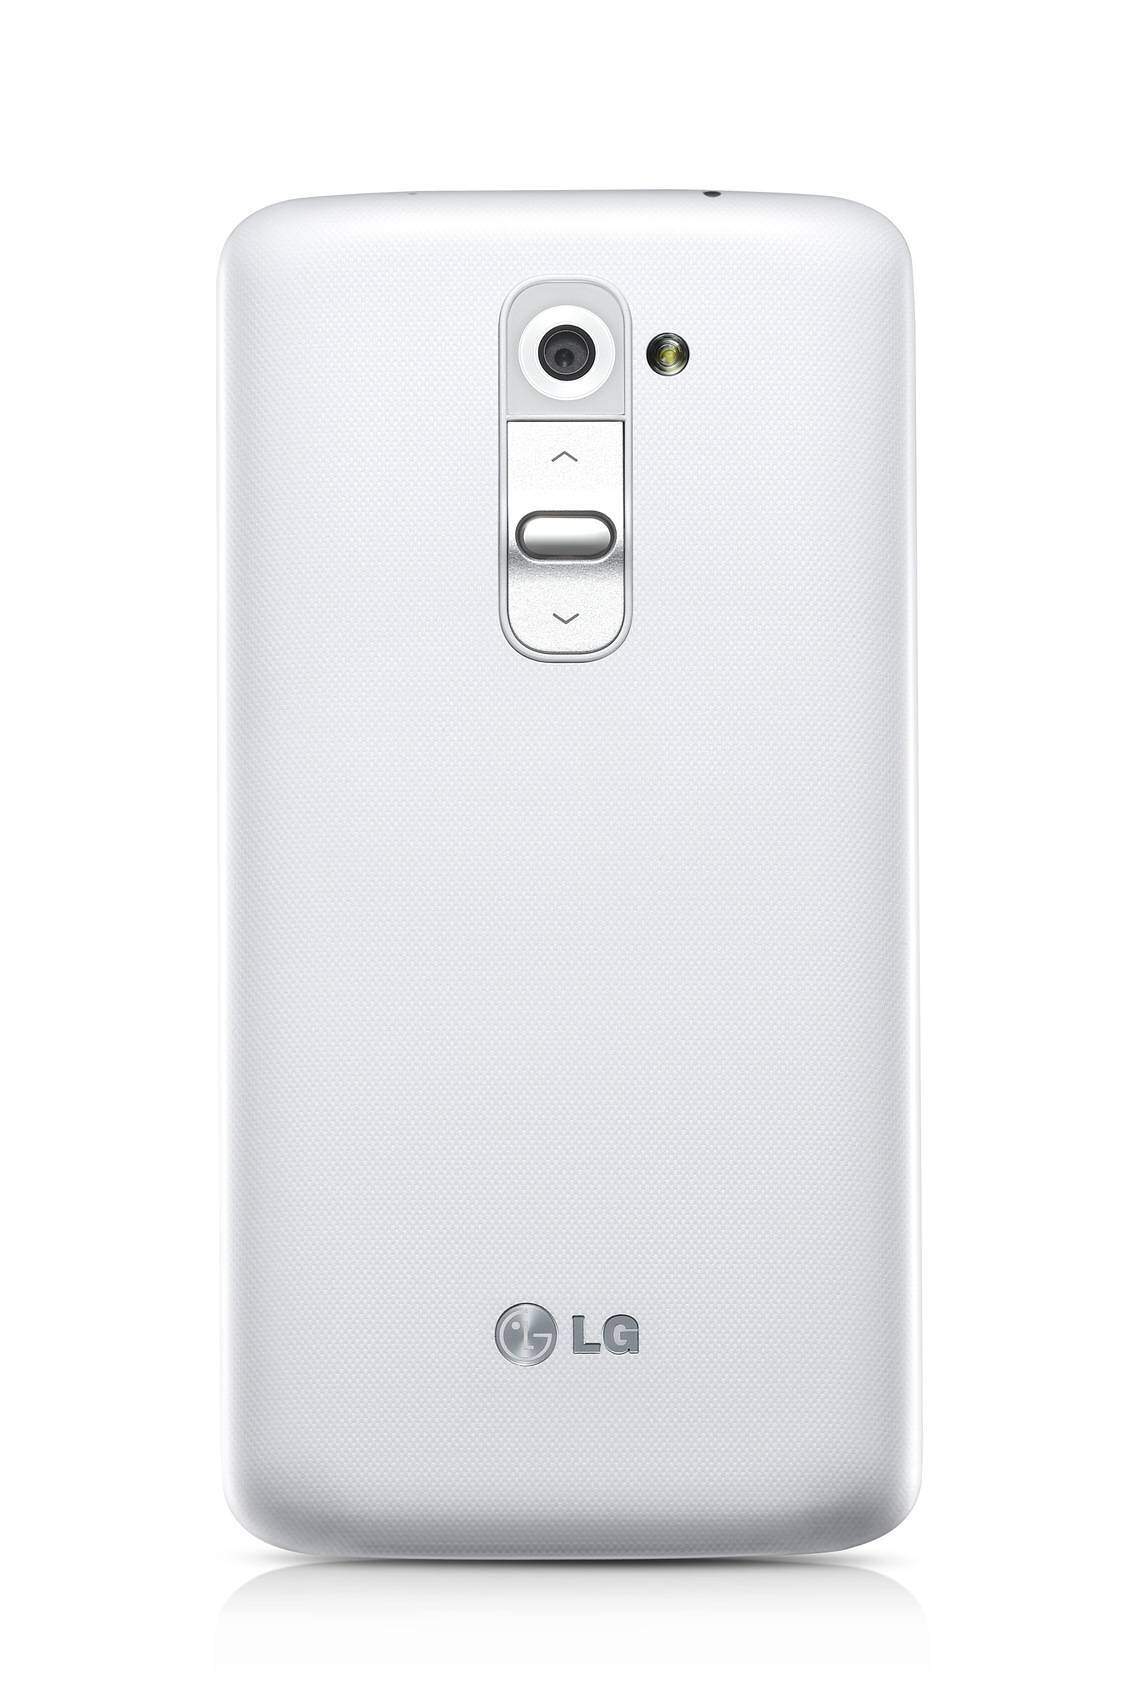 LG-G2-white (1)